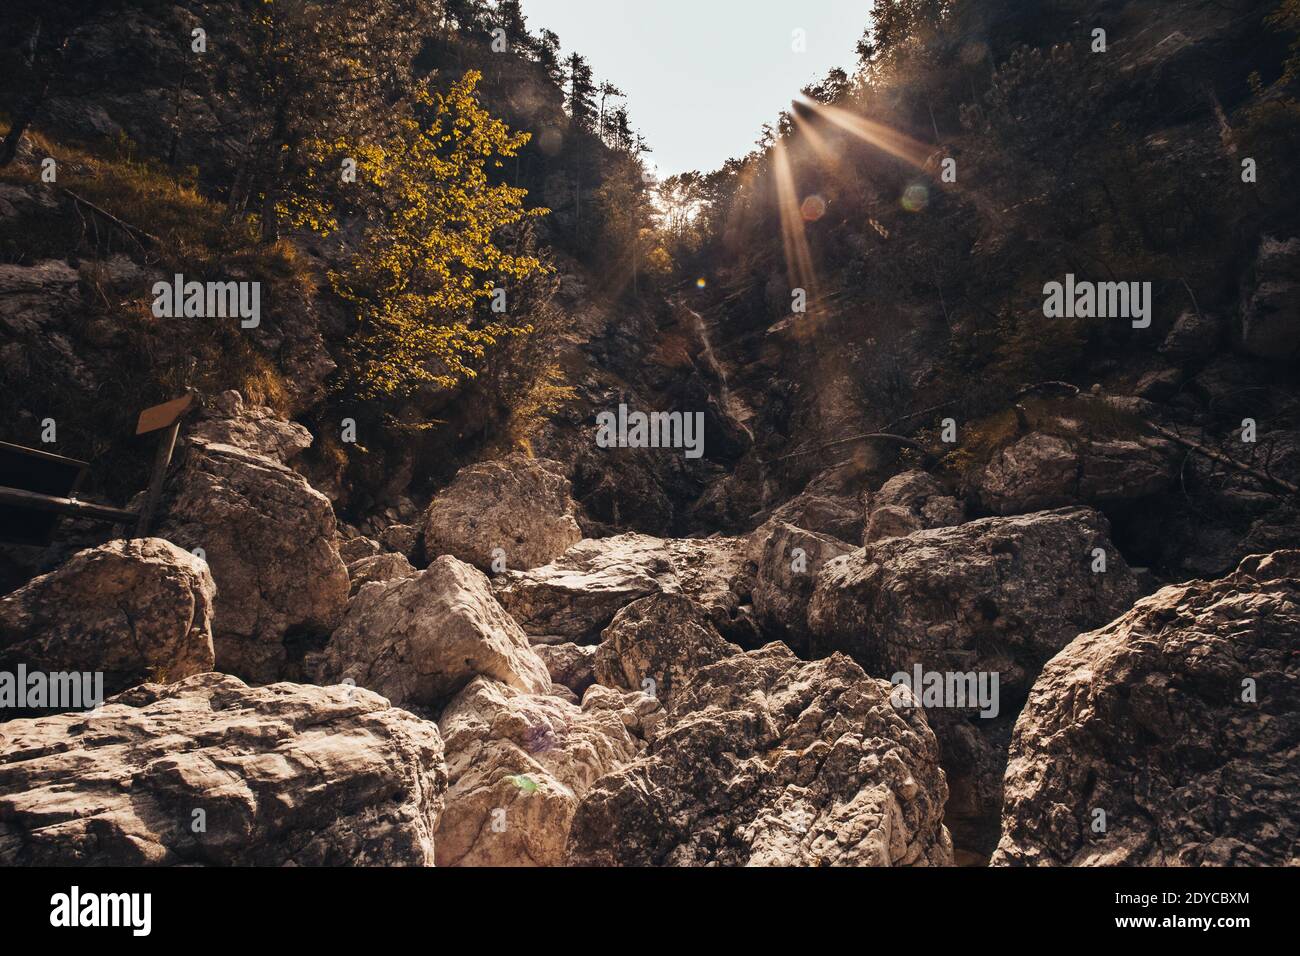 Cascade descendant dans une gorge rocheuse remplie de gros rochers, Monte Resettum, Friuli, Italie. Prise de vue à la lumière Banque D'Images